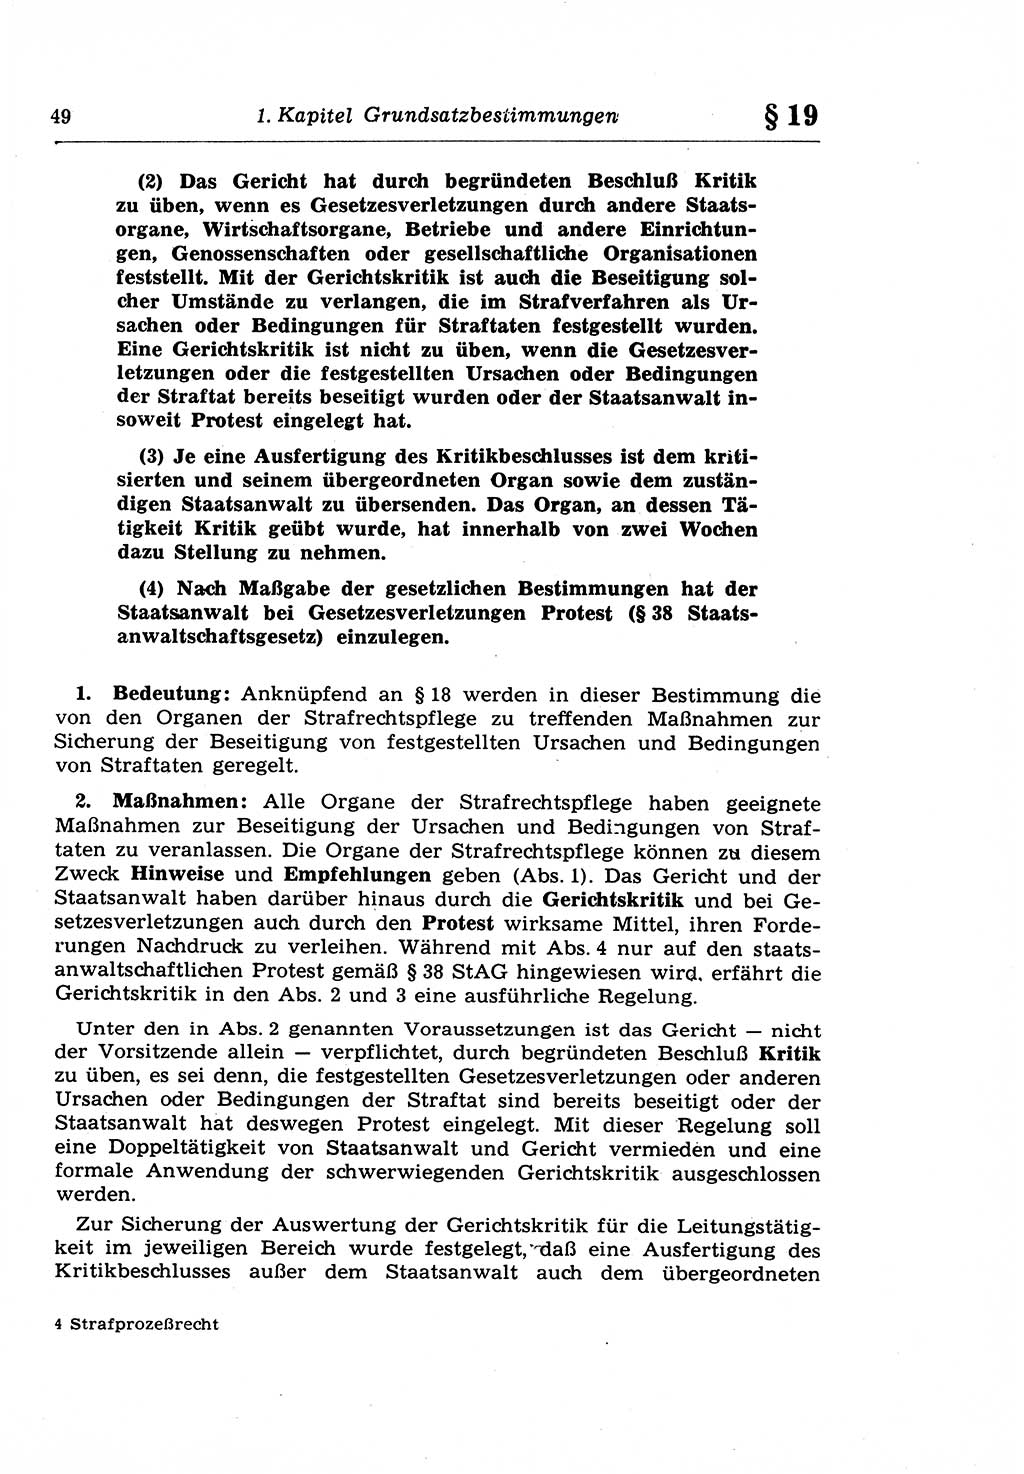 Strafprozeßrecht der DDR (Deutsche Demokratische Republik), Lehrkommentar zur Strafprozeßordnung (StPO) 1968, Seite 49 (Strafprozeßr. DDR Lehrkomm. StPO 19688, S. 49)